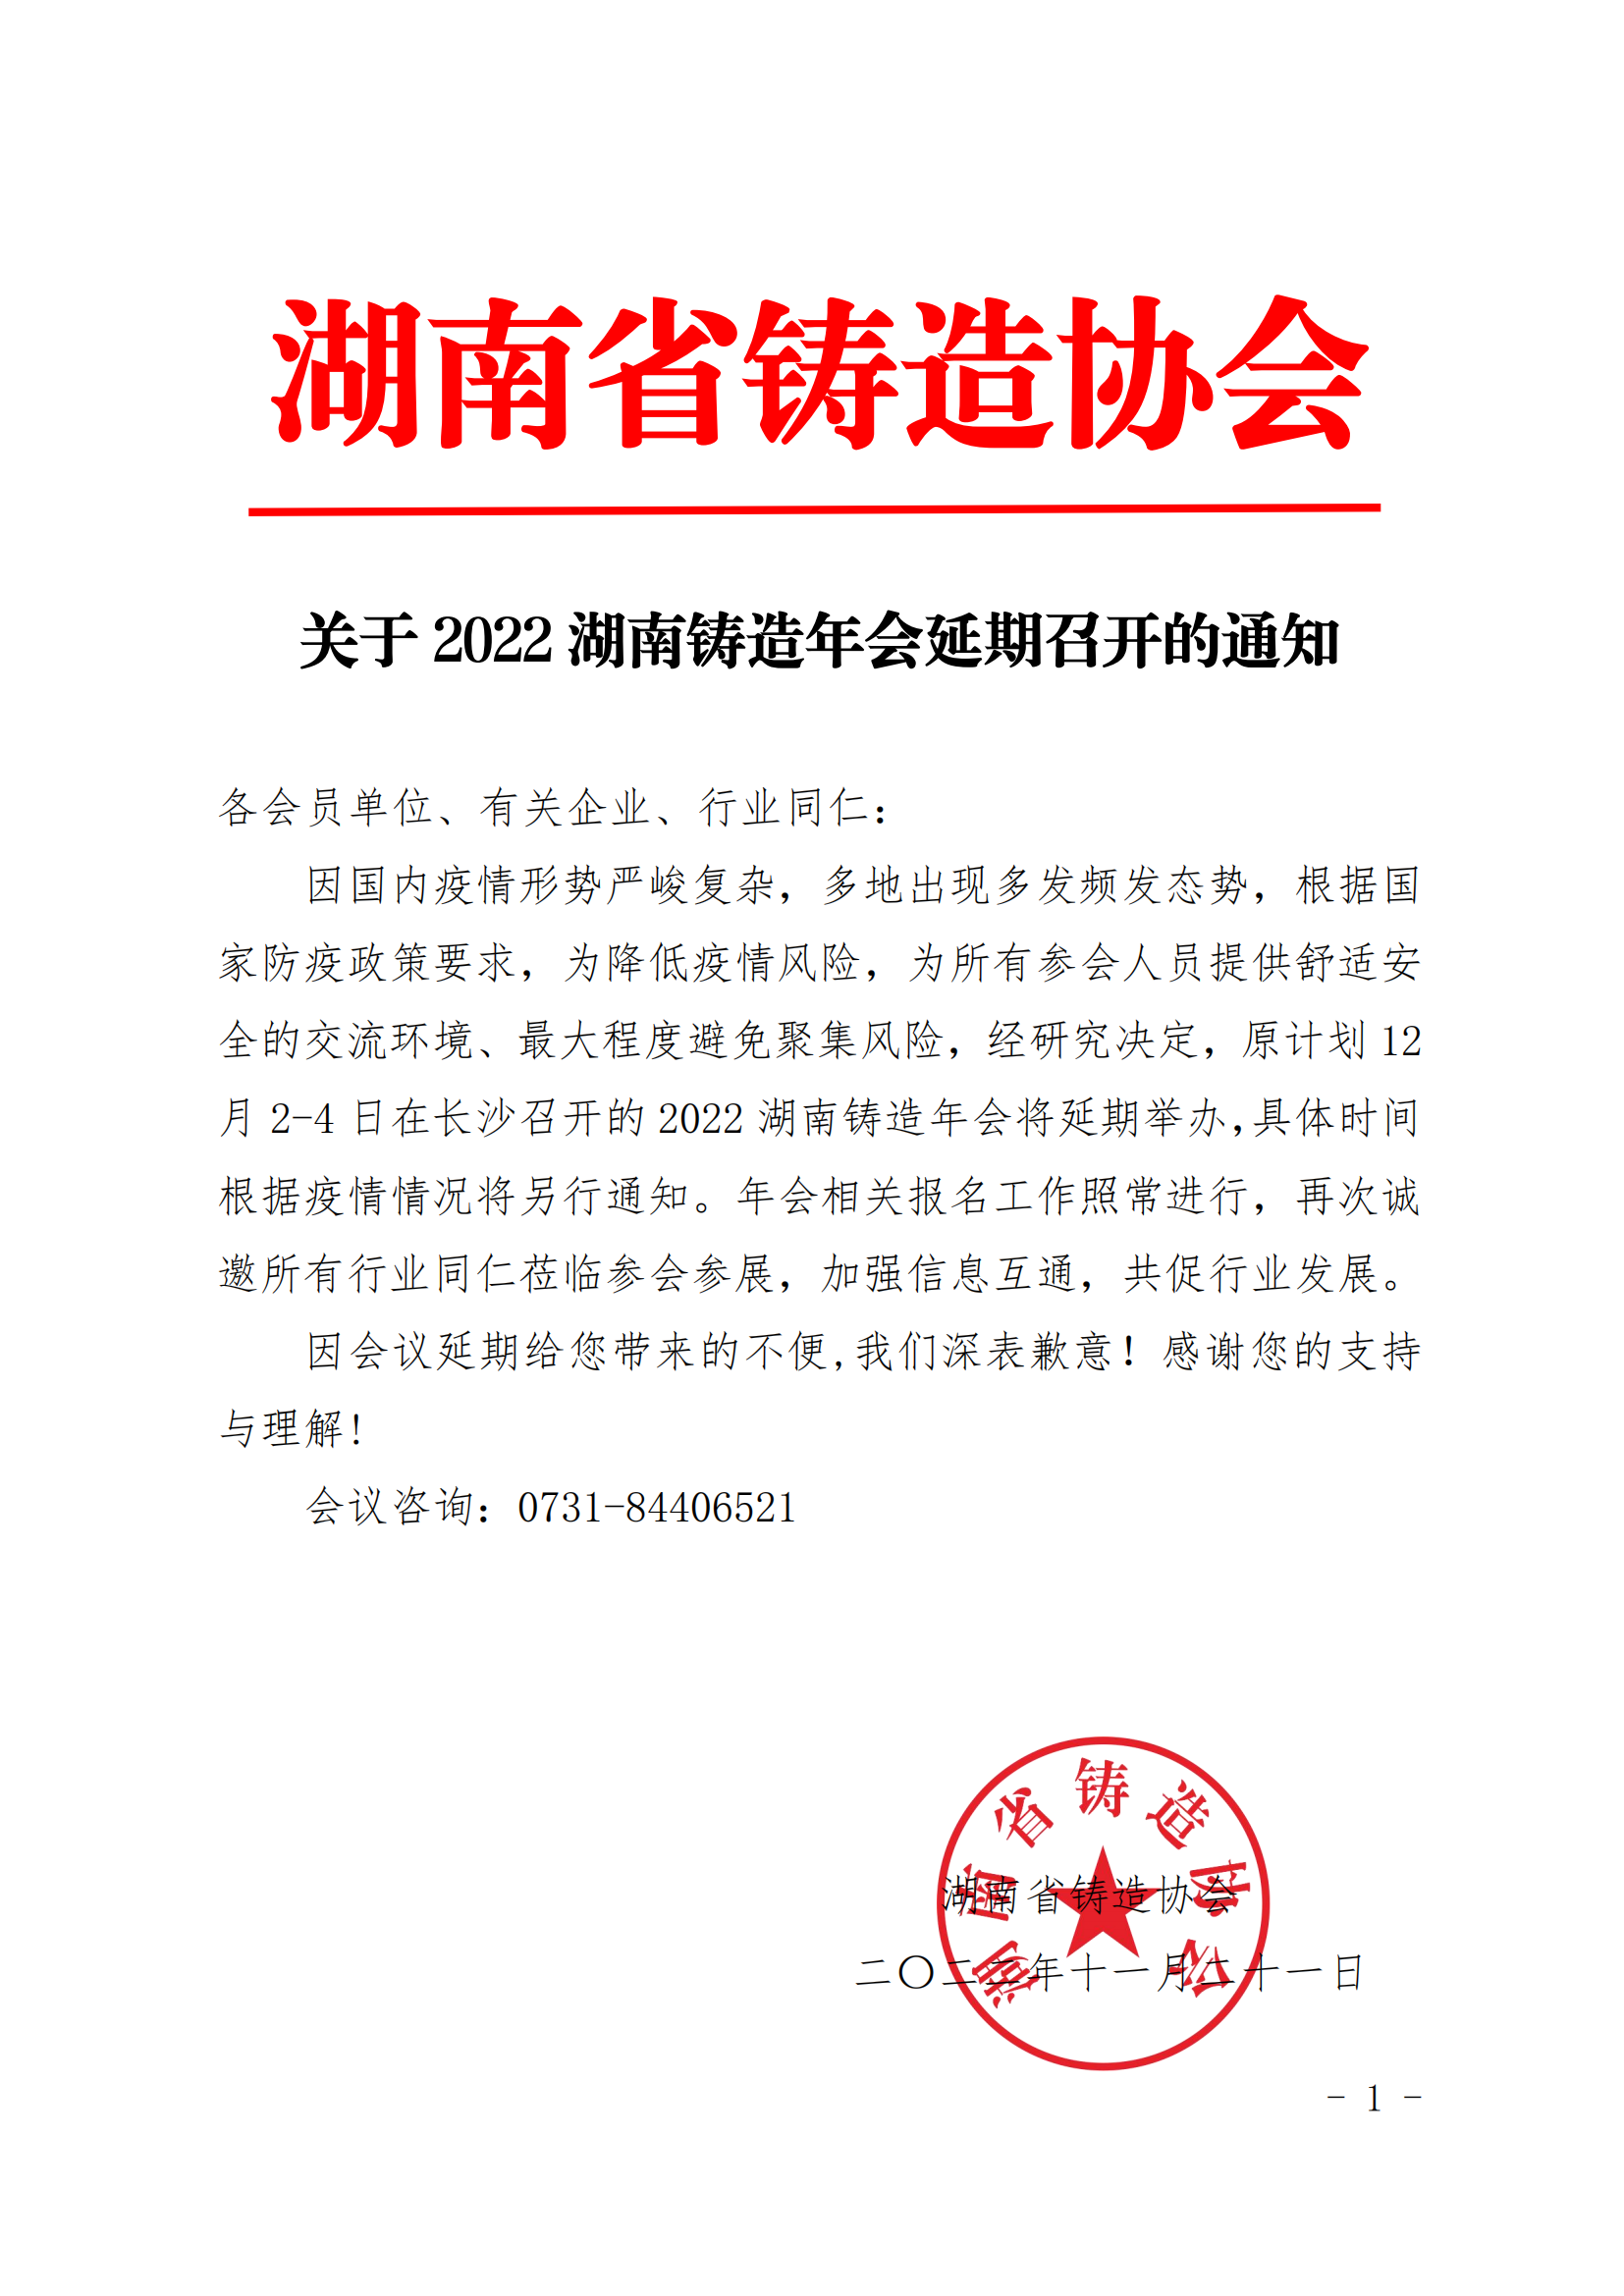 关于2022湖南铸造年会延期召开的通知_00.png